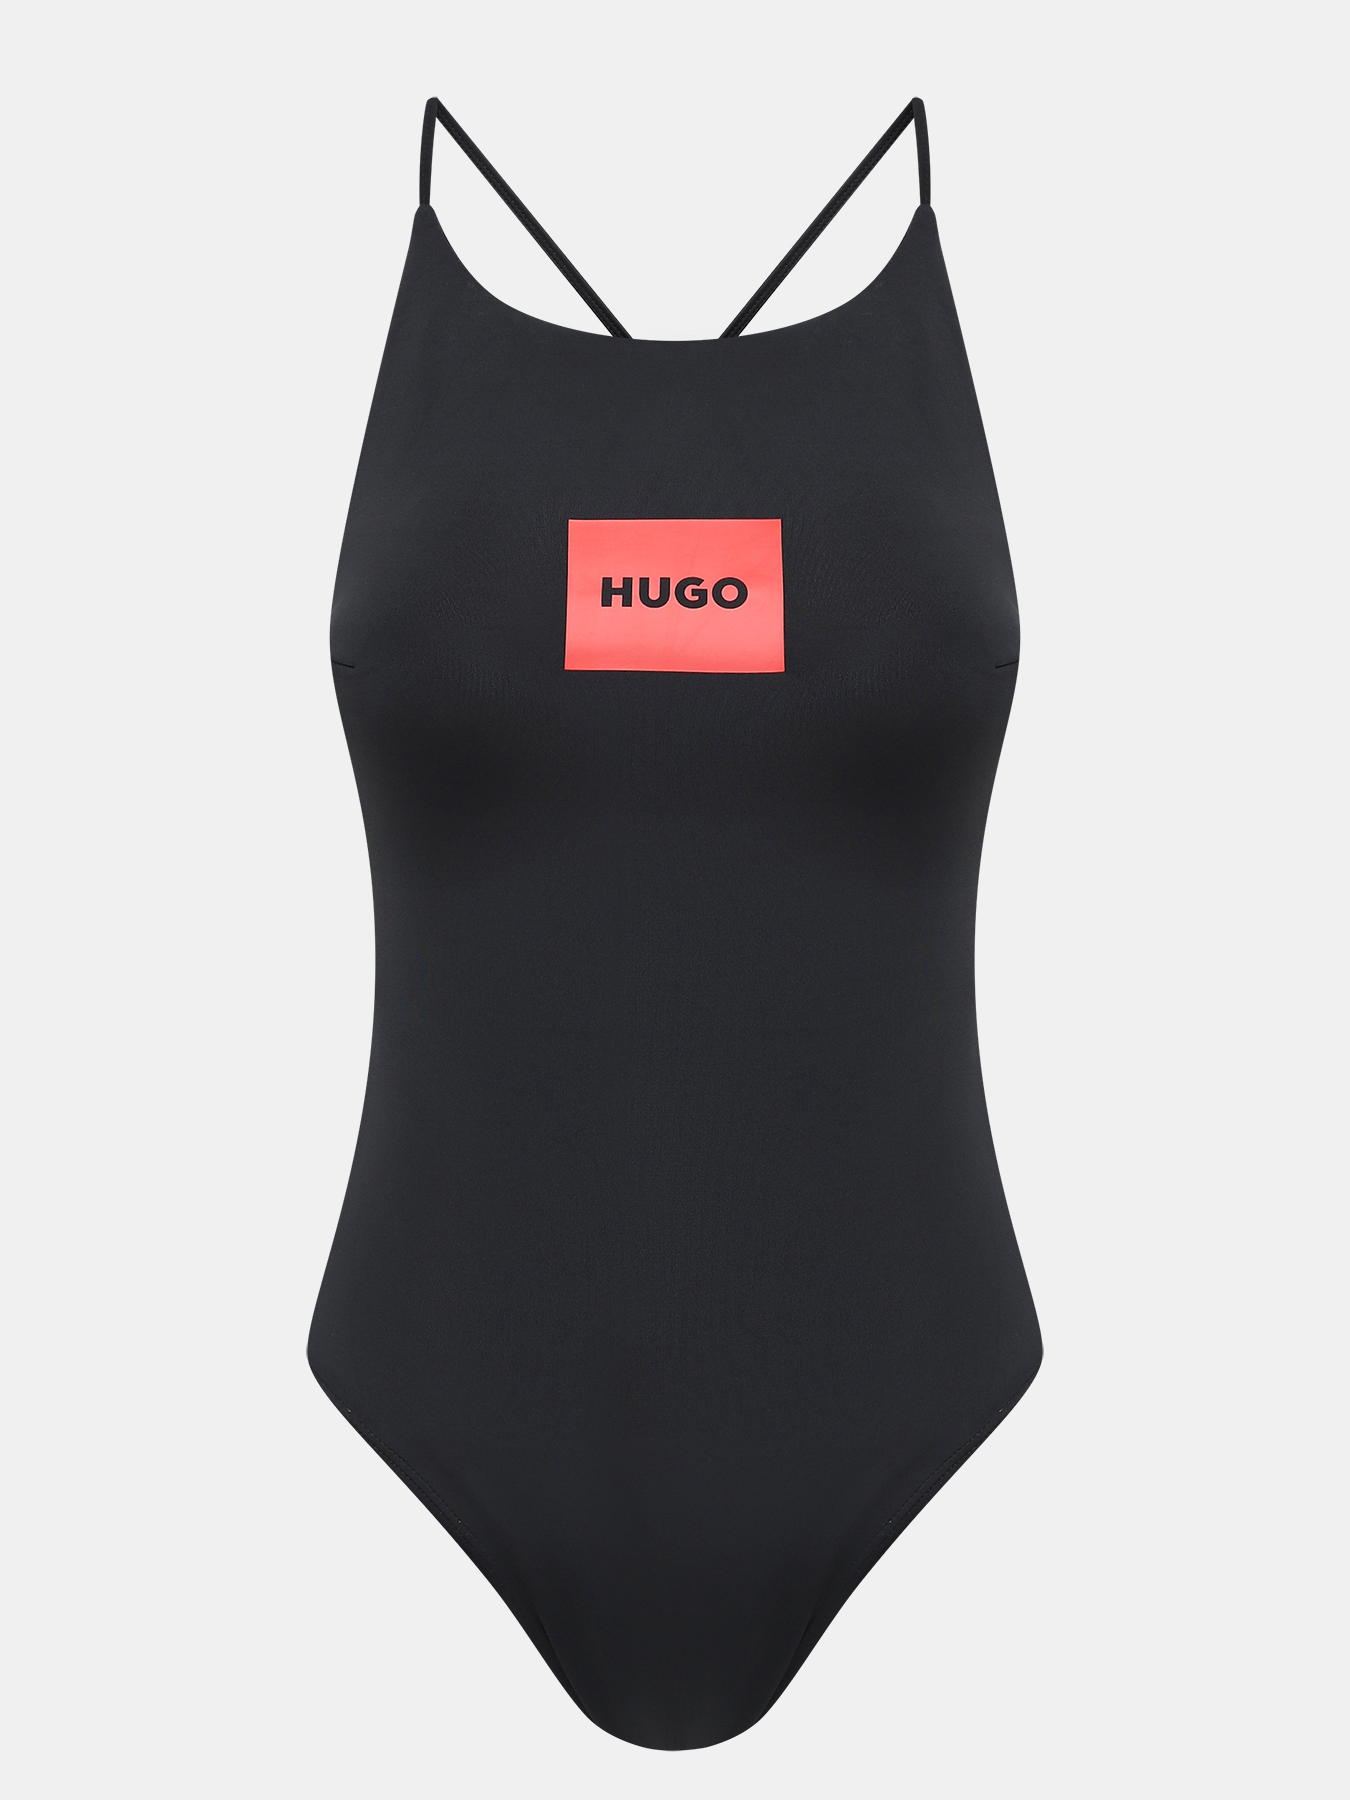 Купальник Swimsuit Label HUGO 436098-042, цвет черный, размер 42-44